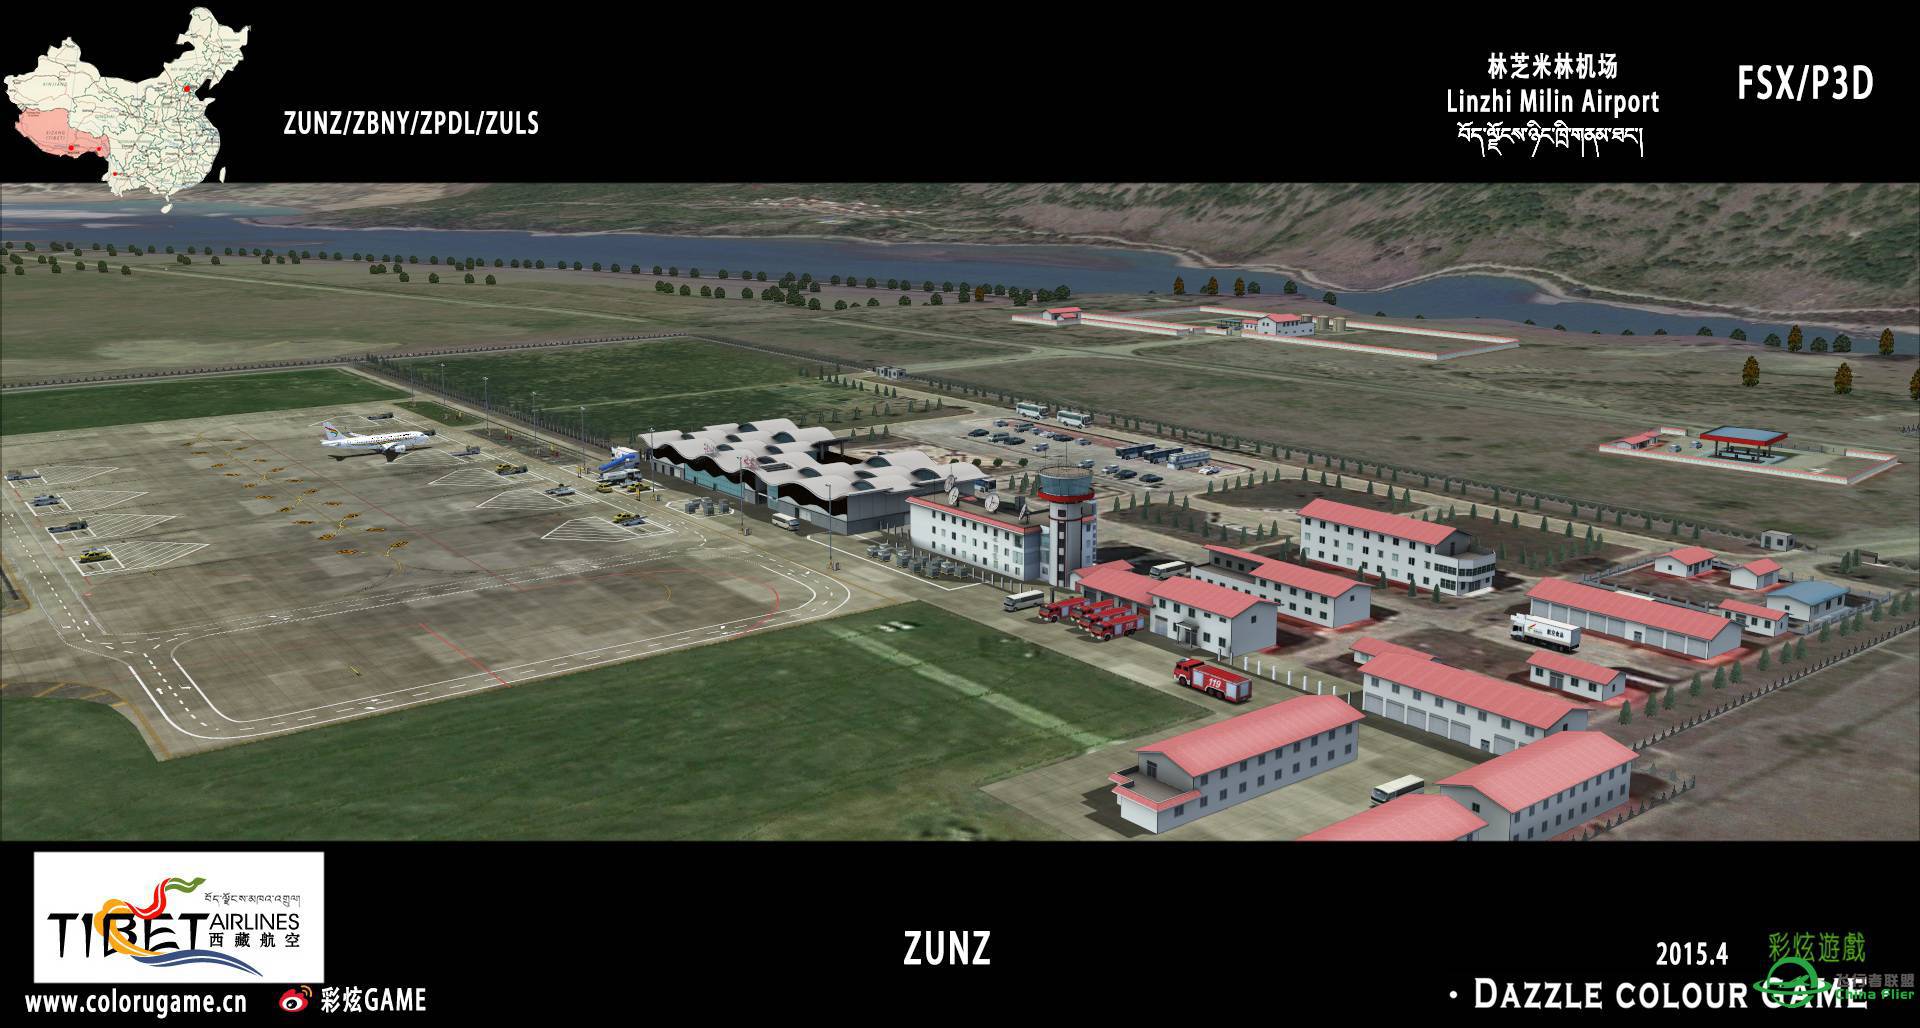 彩炫地景：林芝米林机场（ZUNZ）正式发布！-6196 